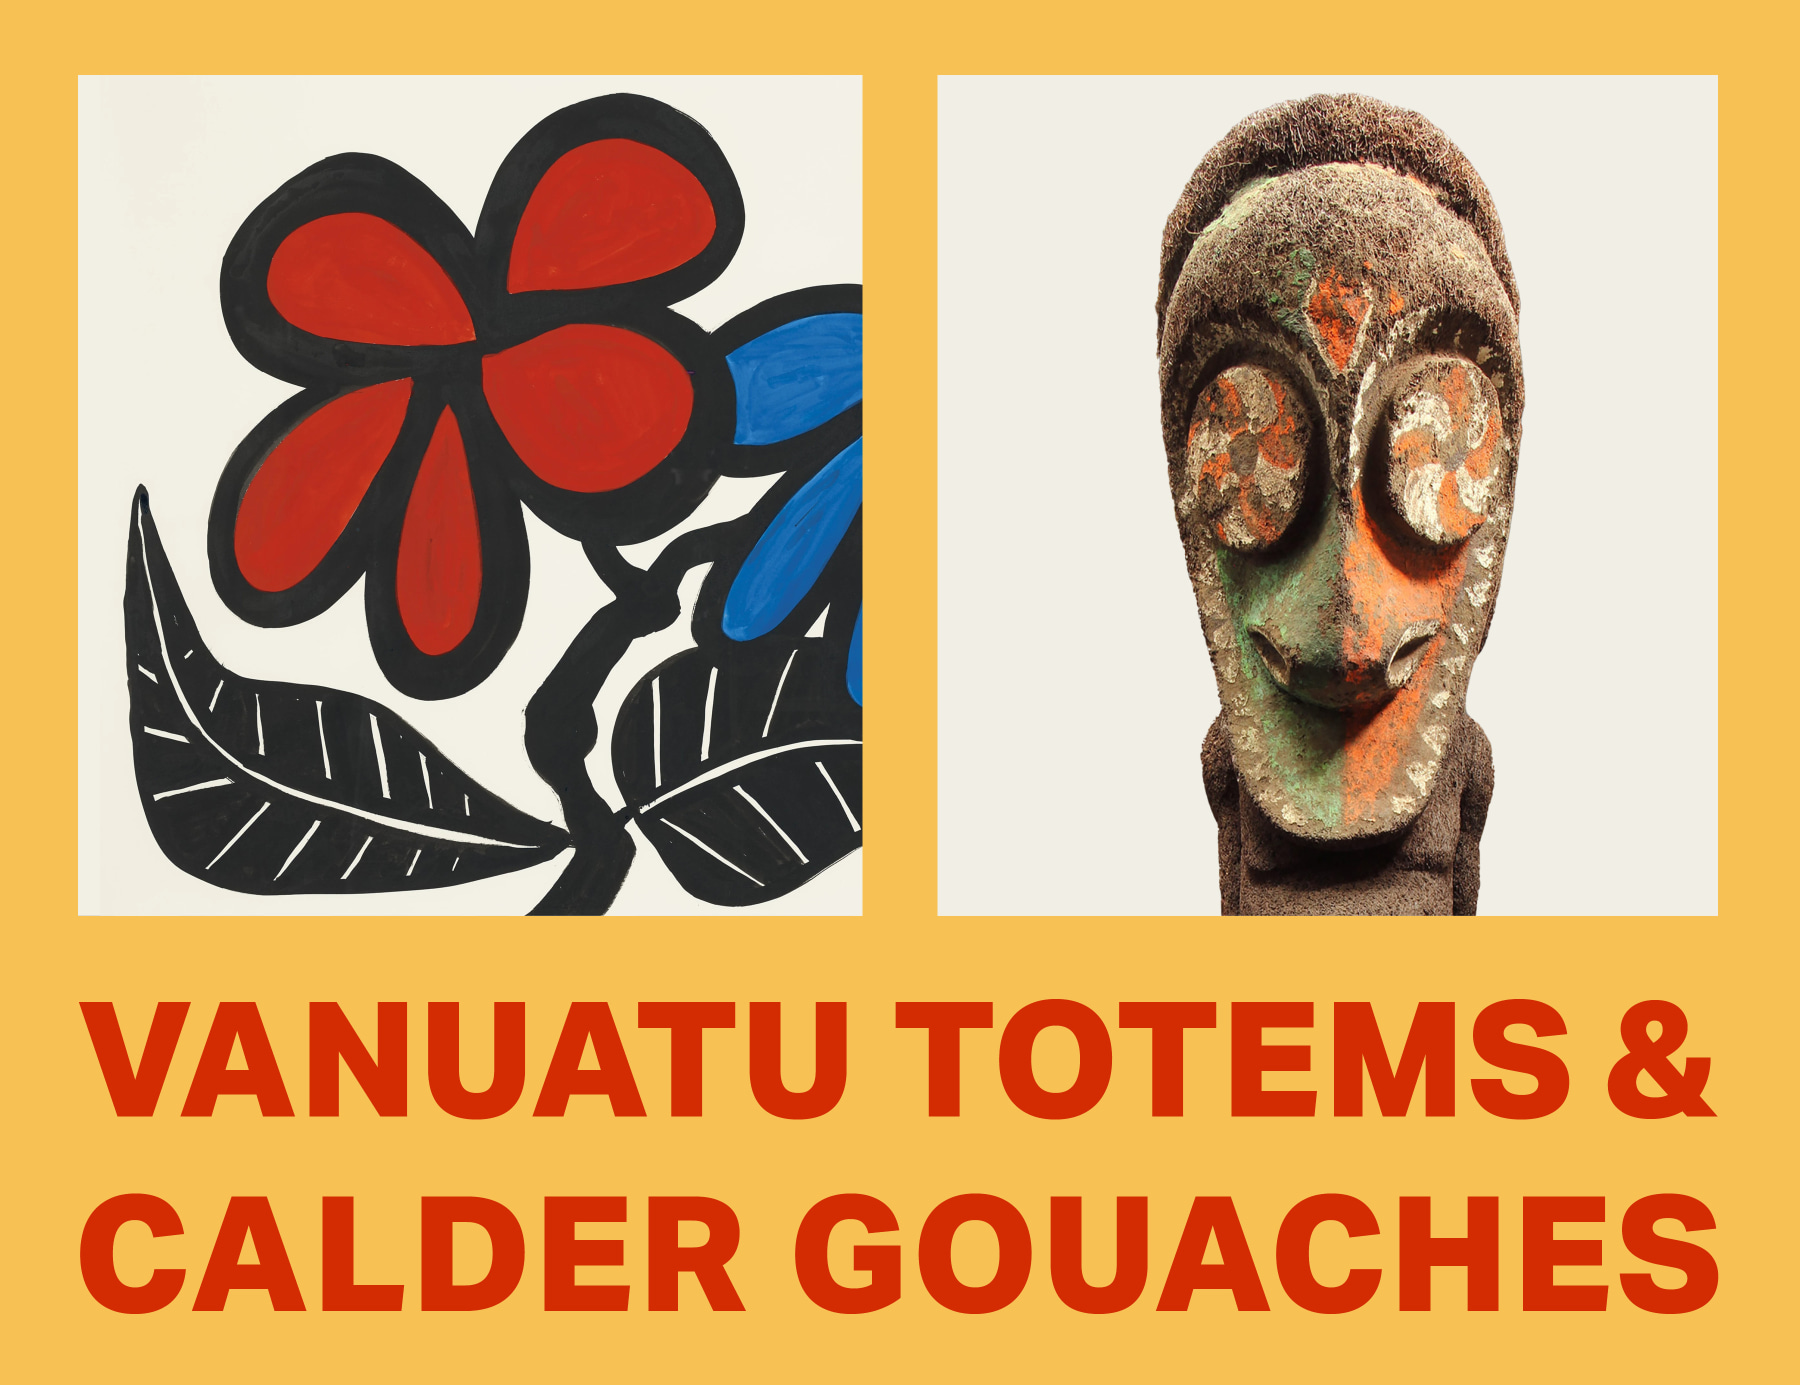 Vanuatu Totems &amp;amp; Calder Gouaches
Independent 20th Century
&amp;amp; 55 Great Jones Street

Image Link